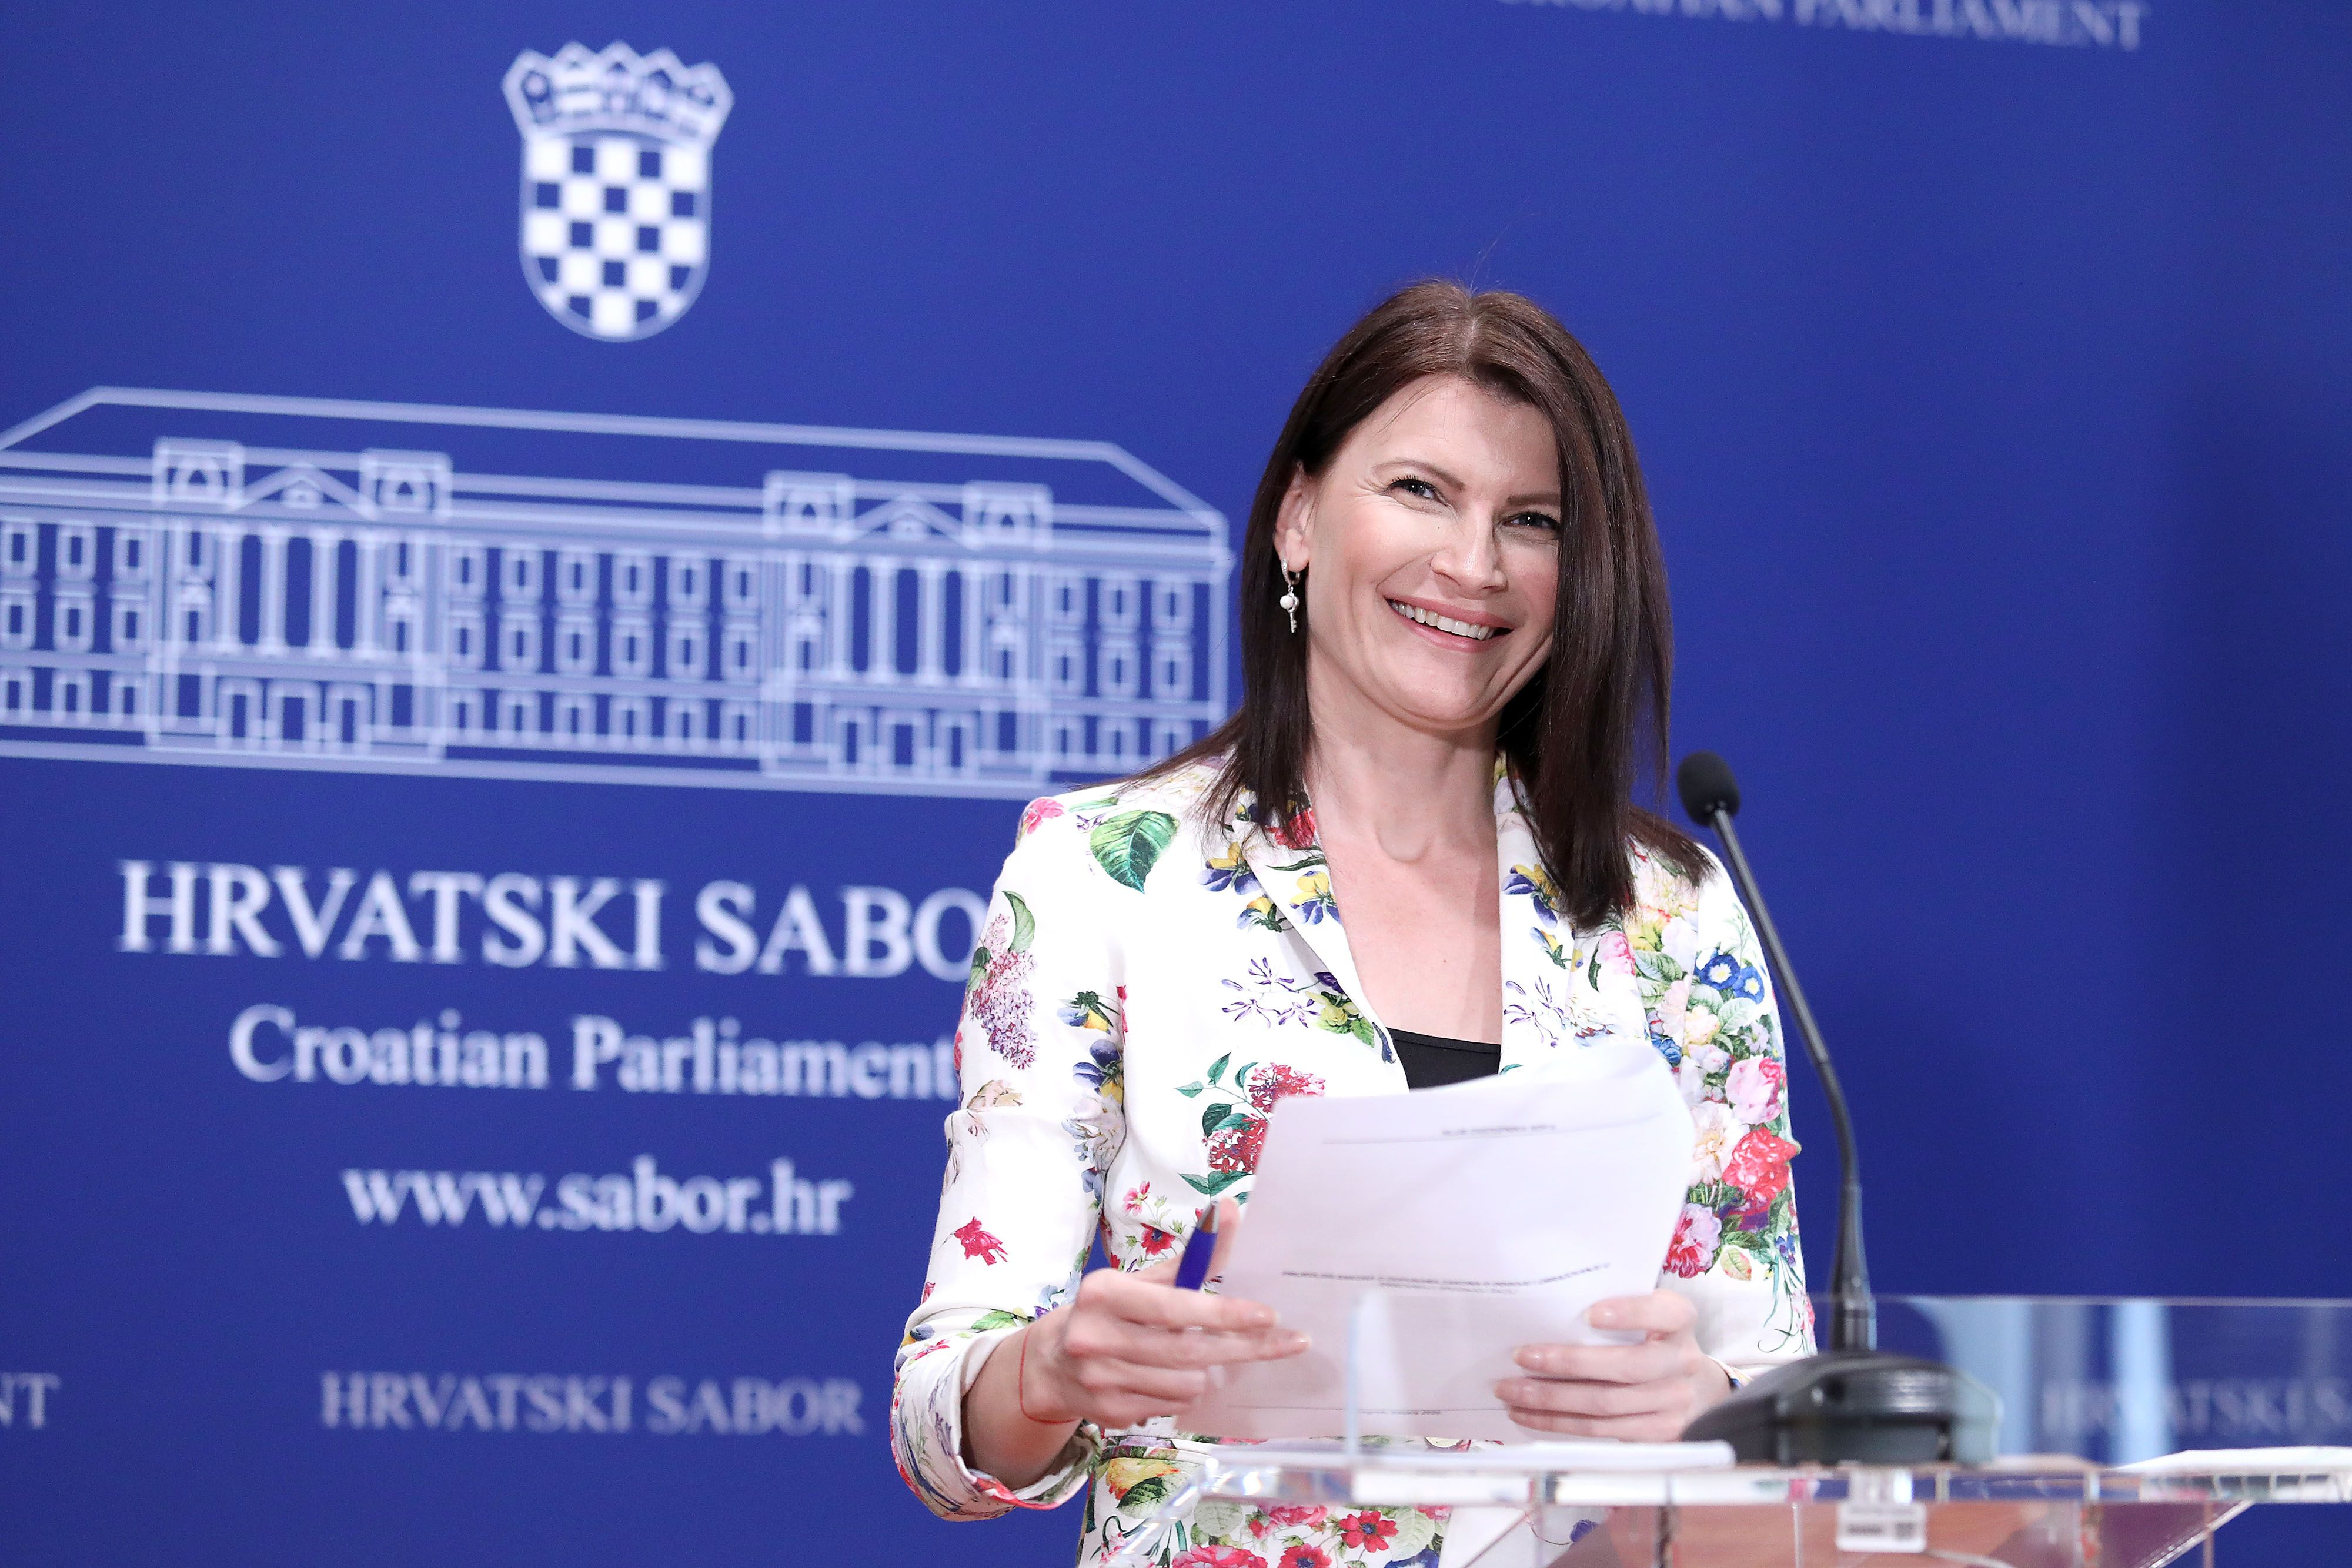 Jedna od najbolje odjevenih saborskih zastupnica, Sabina Glasovac, odabrala cvjetni uzorak, evo što savjetnica kaže o tome